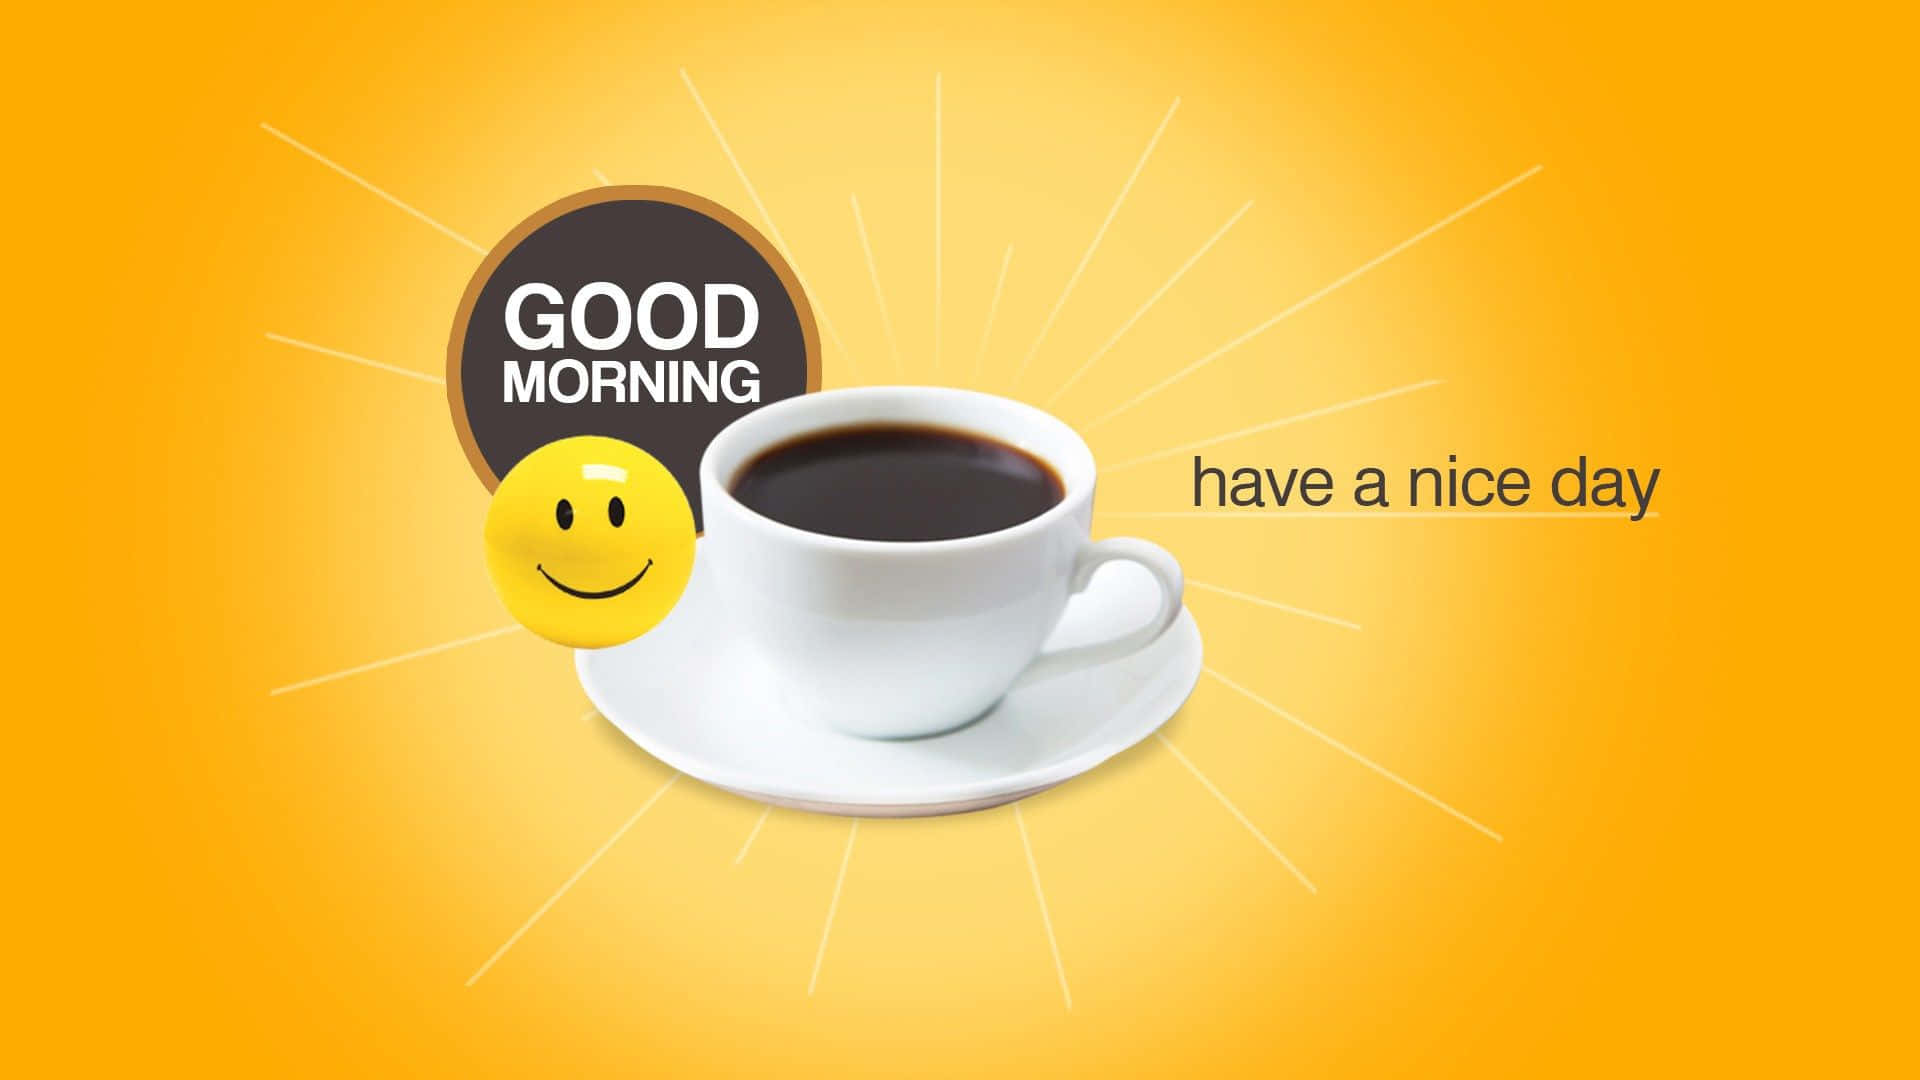 Wishing you a beautiful good morning